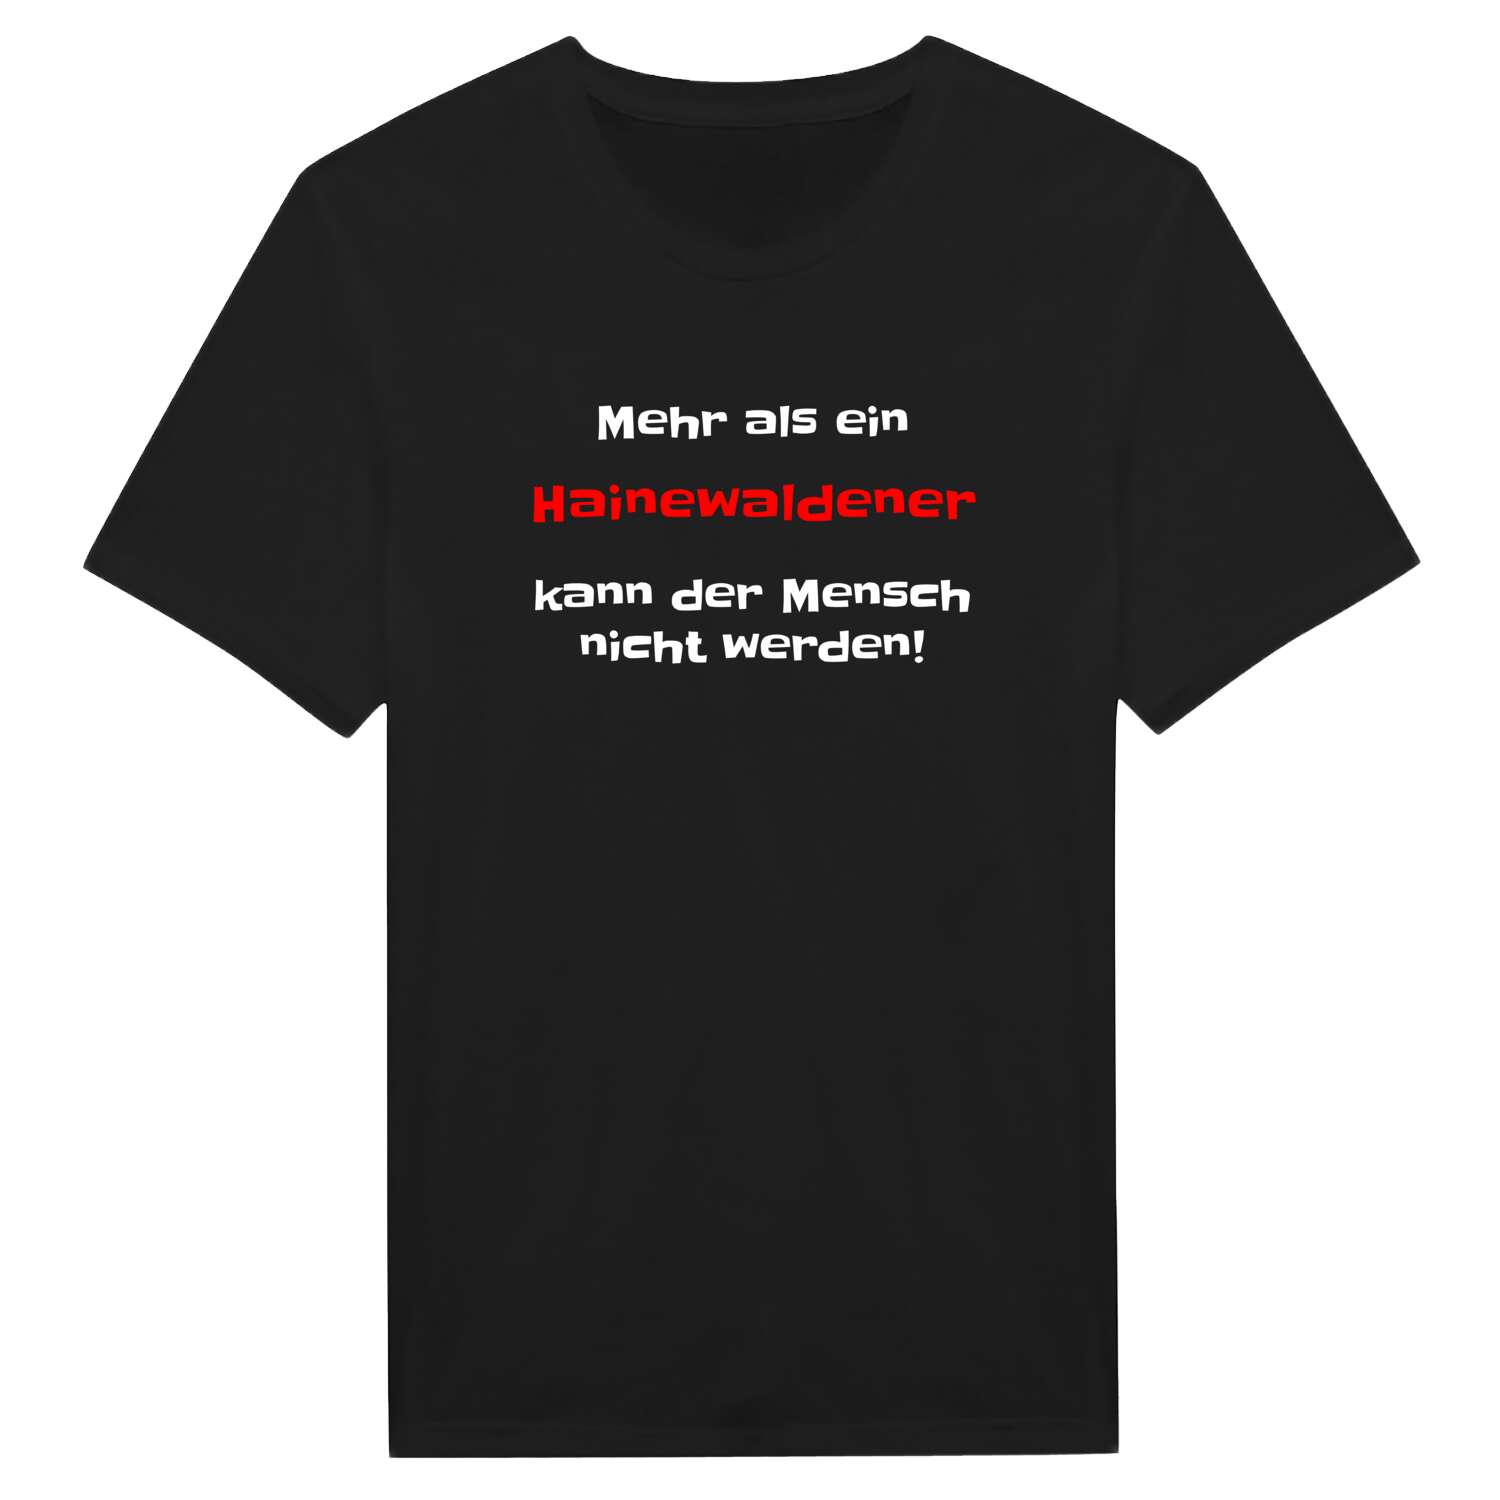 Hainewalde T-Shirt »Mehr als ein«